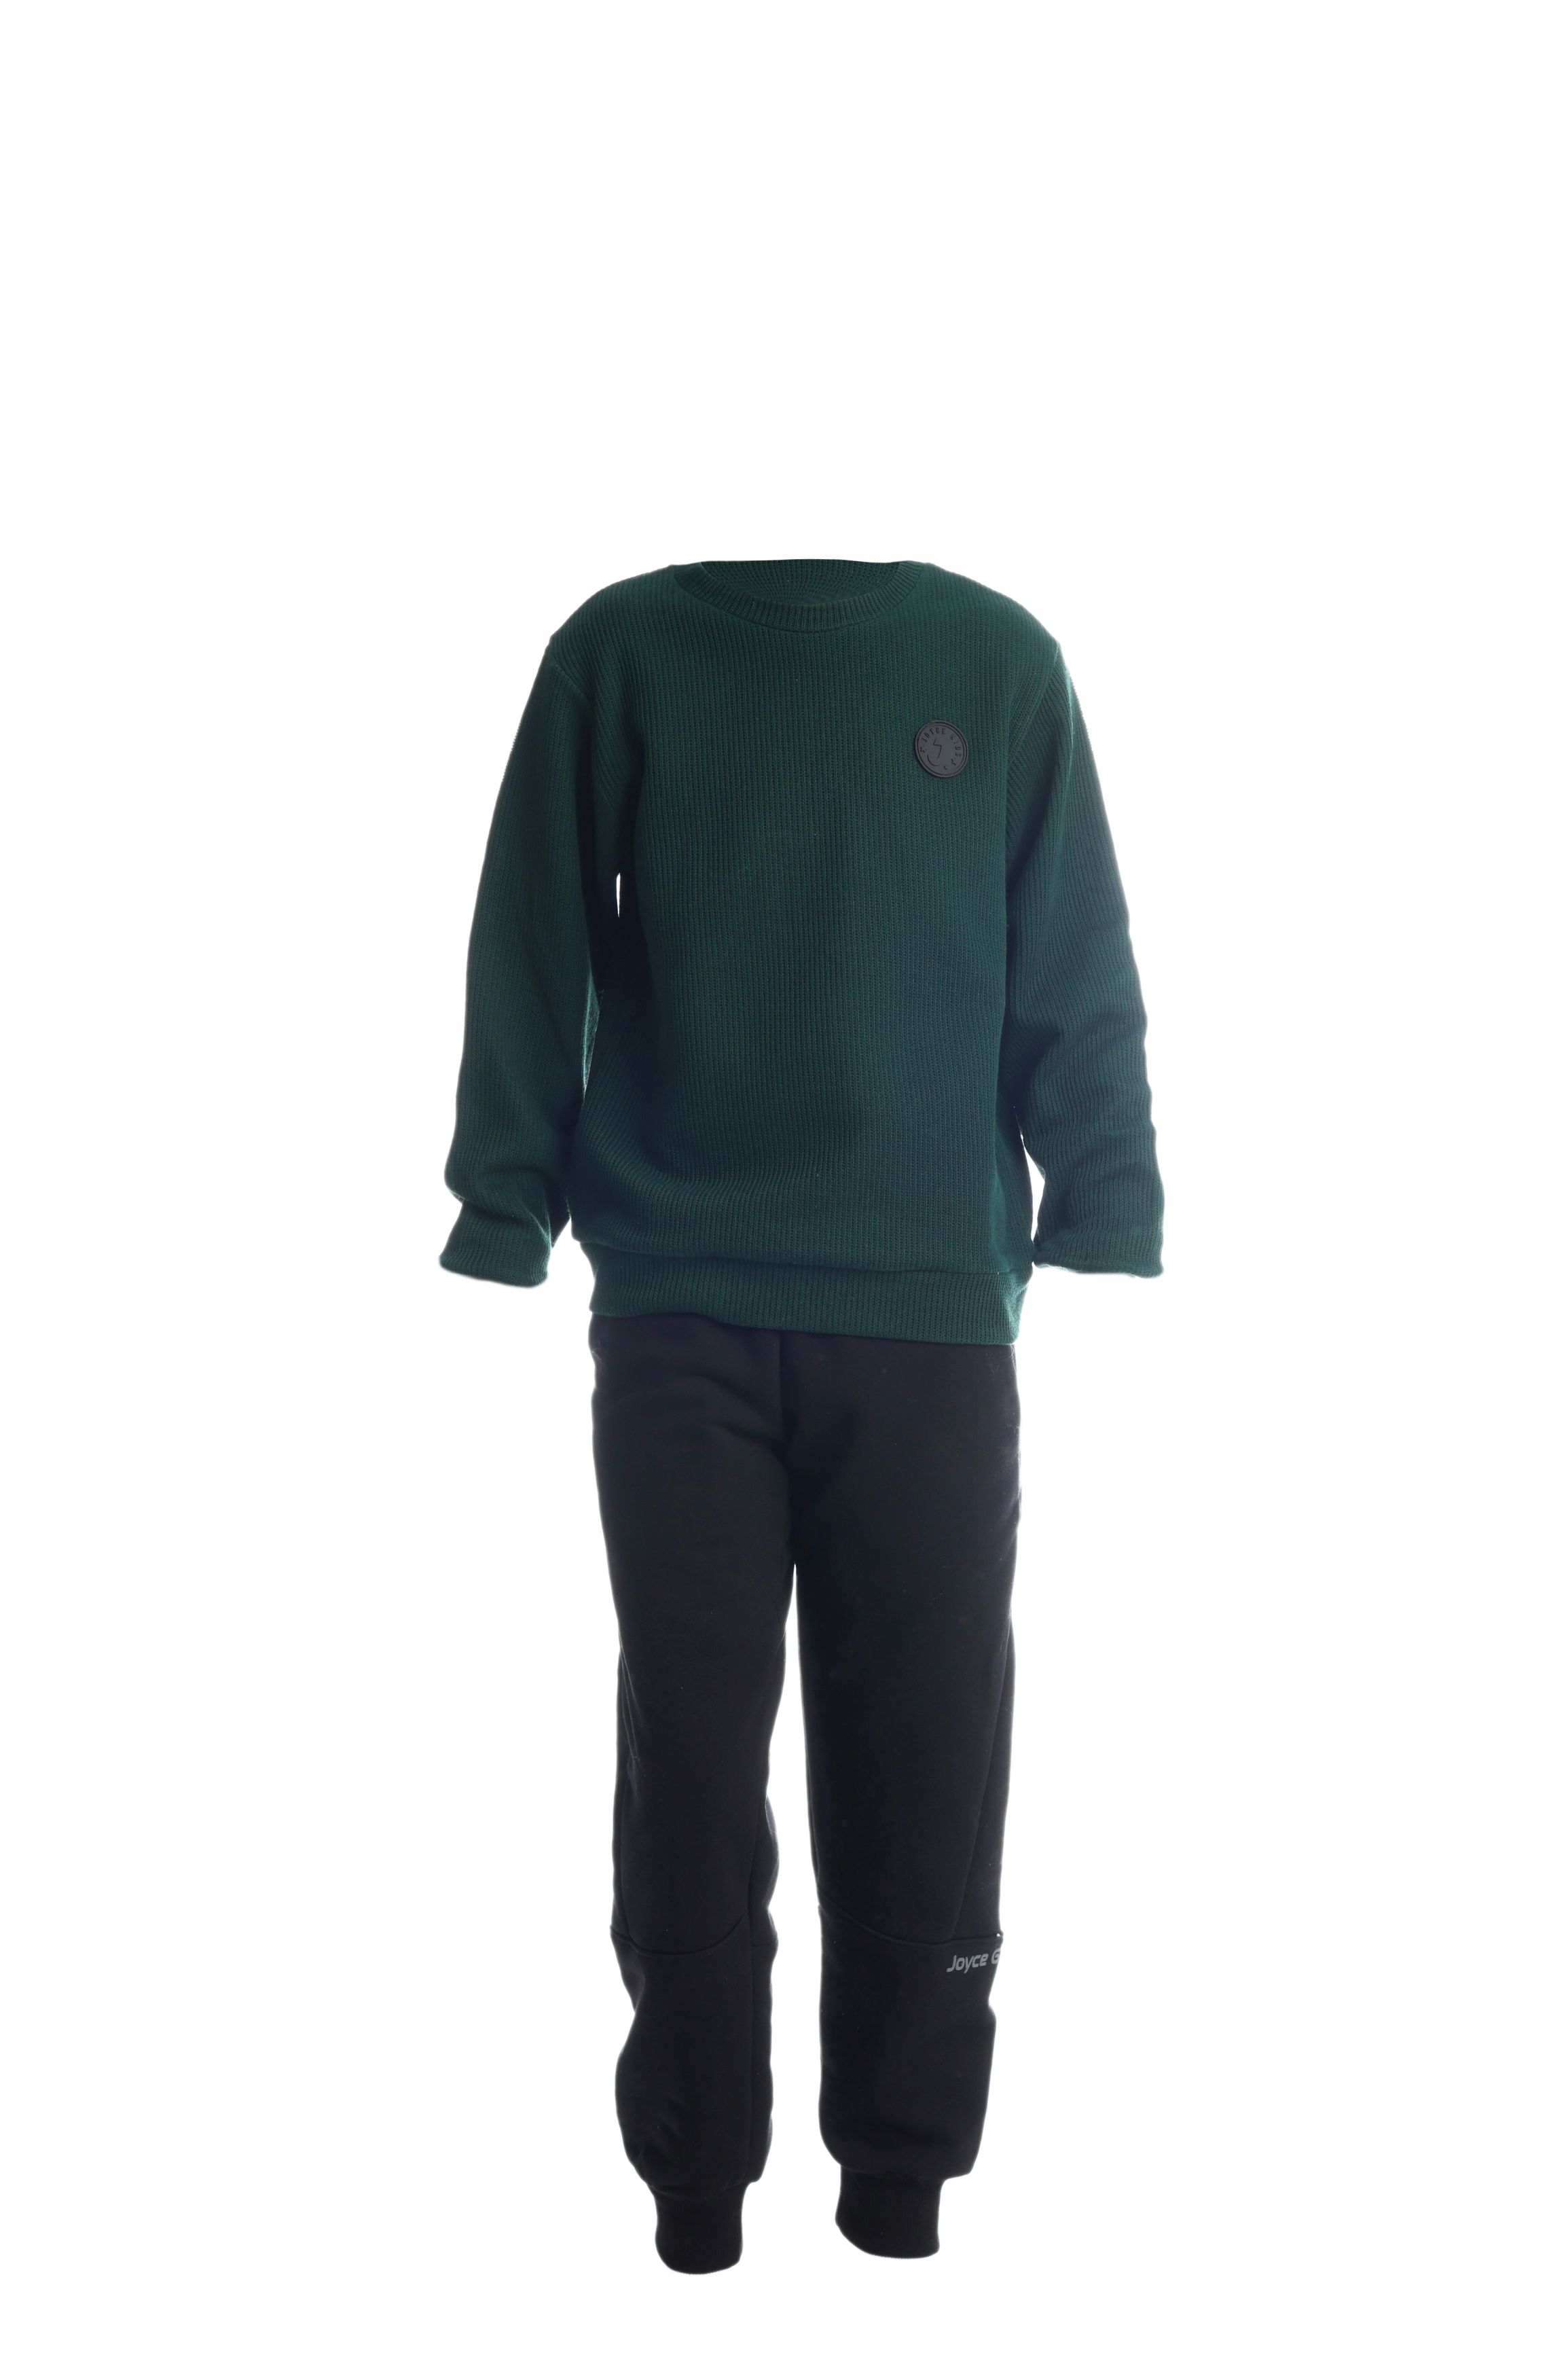 Chlapecké bavlněné tričko/svetr "TAB"/Zelená, vínová Barva: Zelená, Velikost: vel. 10 (138/144 cm)